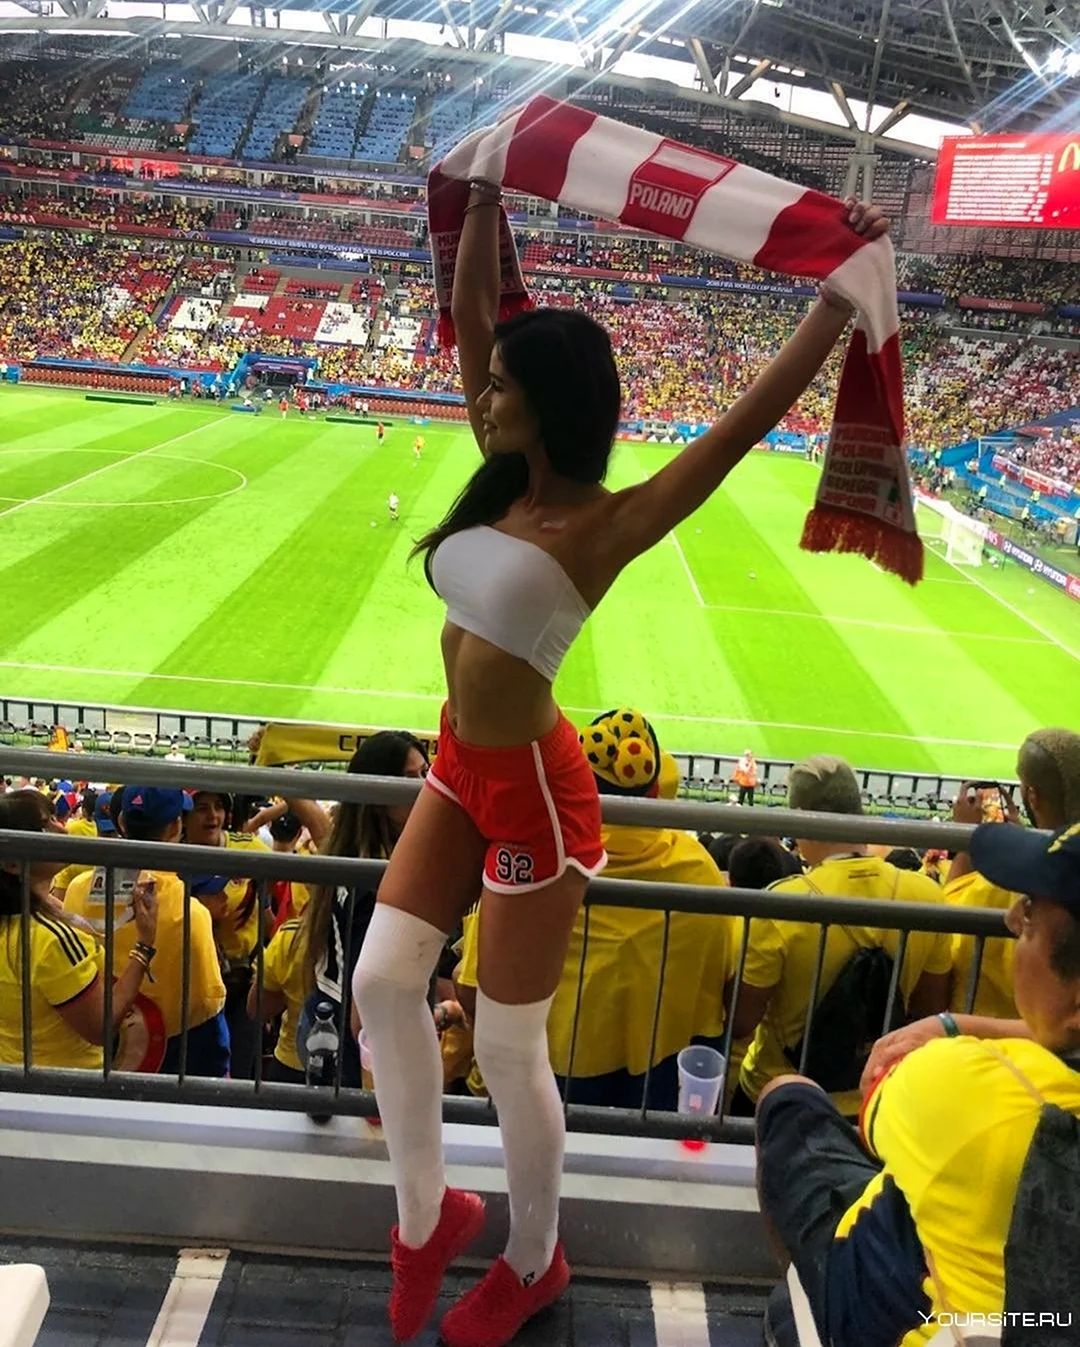 Чемпионат мира по футболу 2018 девушки болельщицы. Красивая девушка